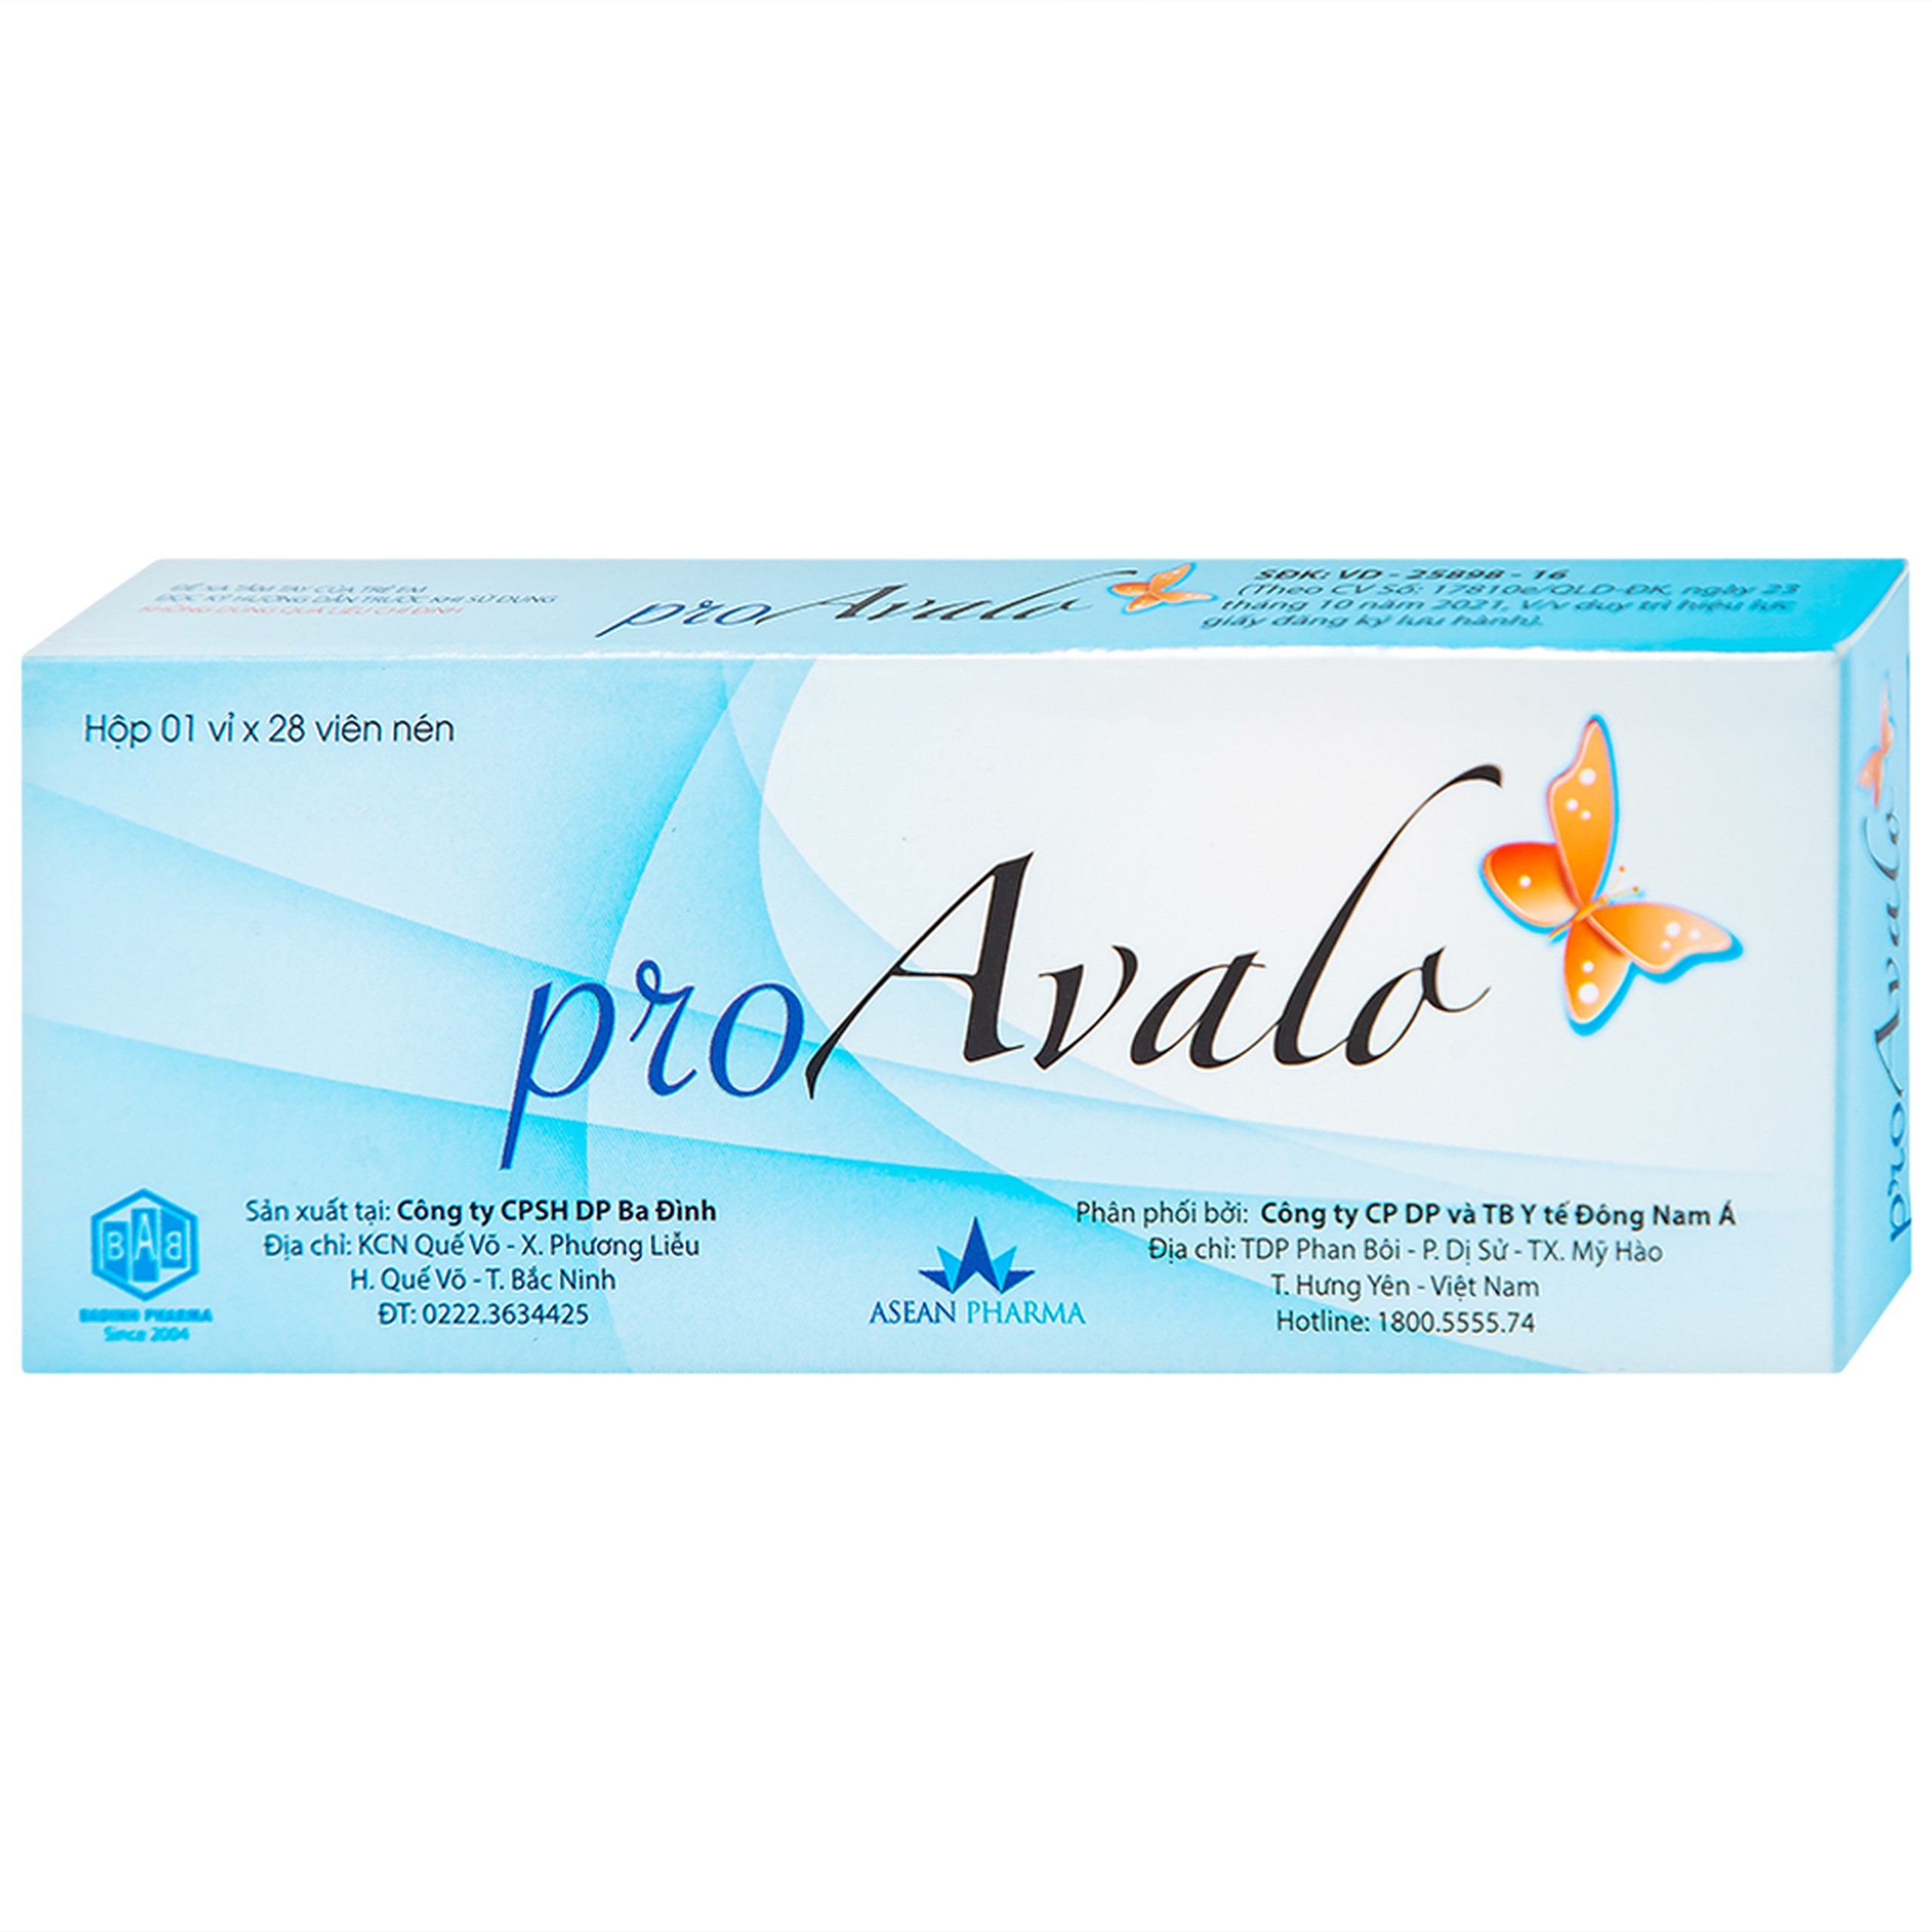 Thuốc proAvalo 0.03mg Babiophar tránh thai hằng ngày (1 vỉ x 28 viên)